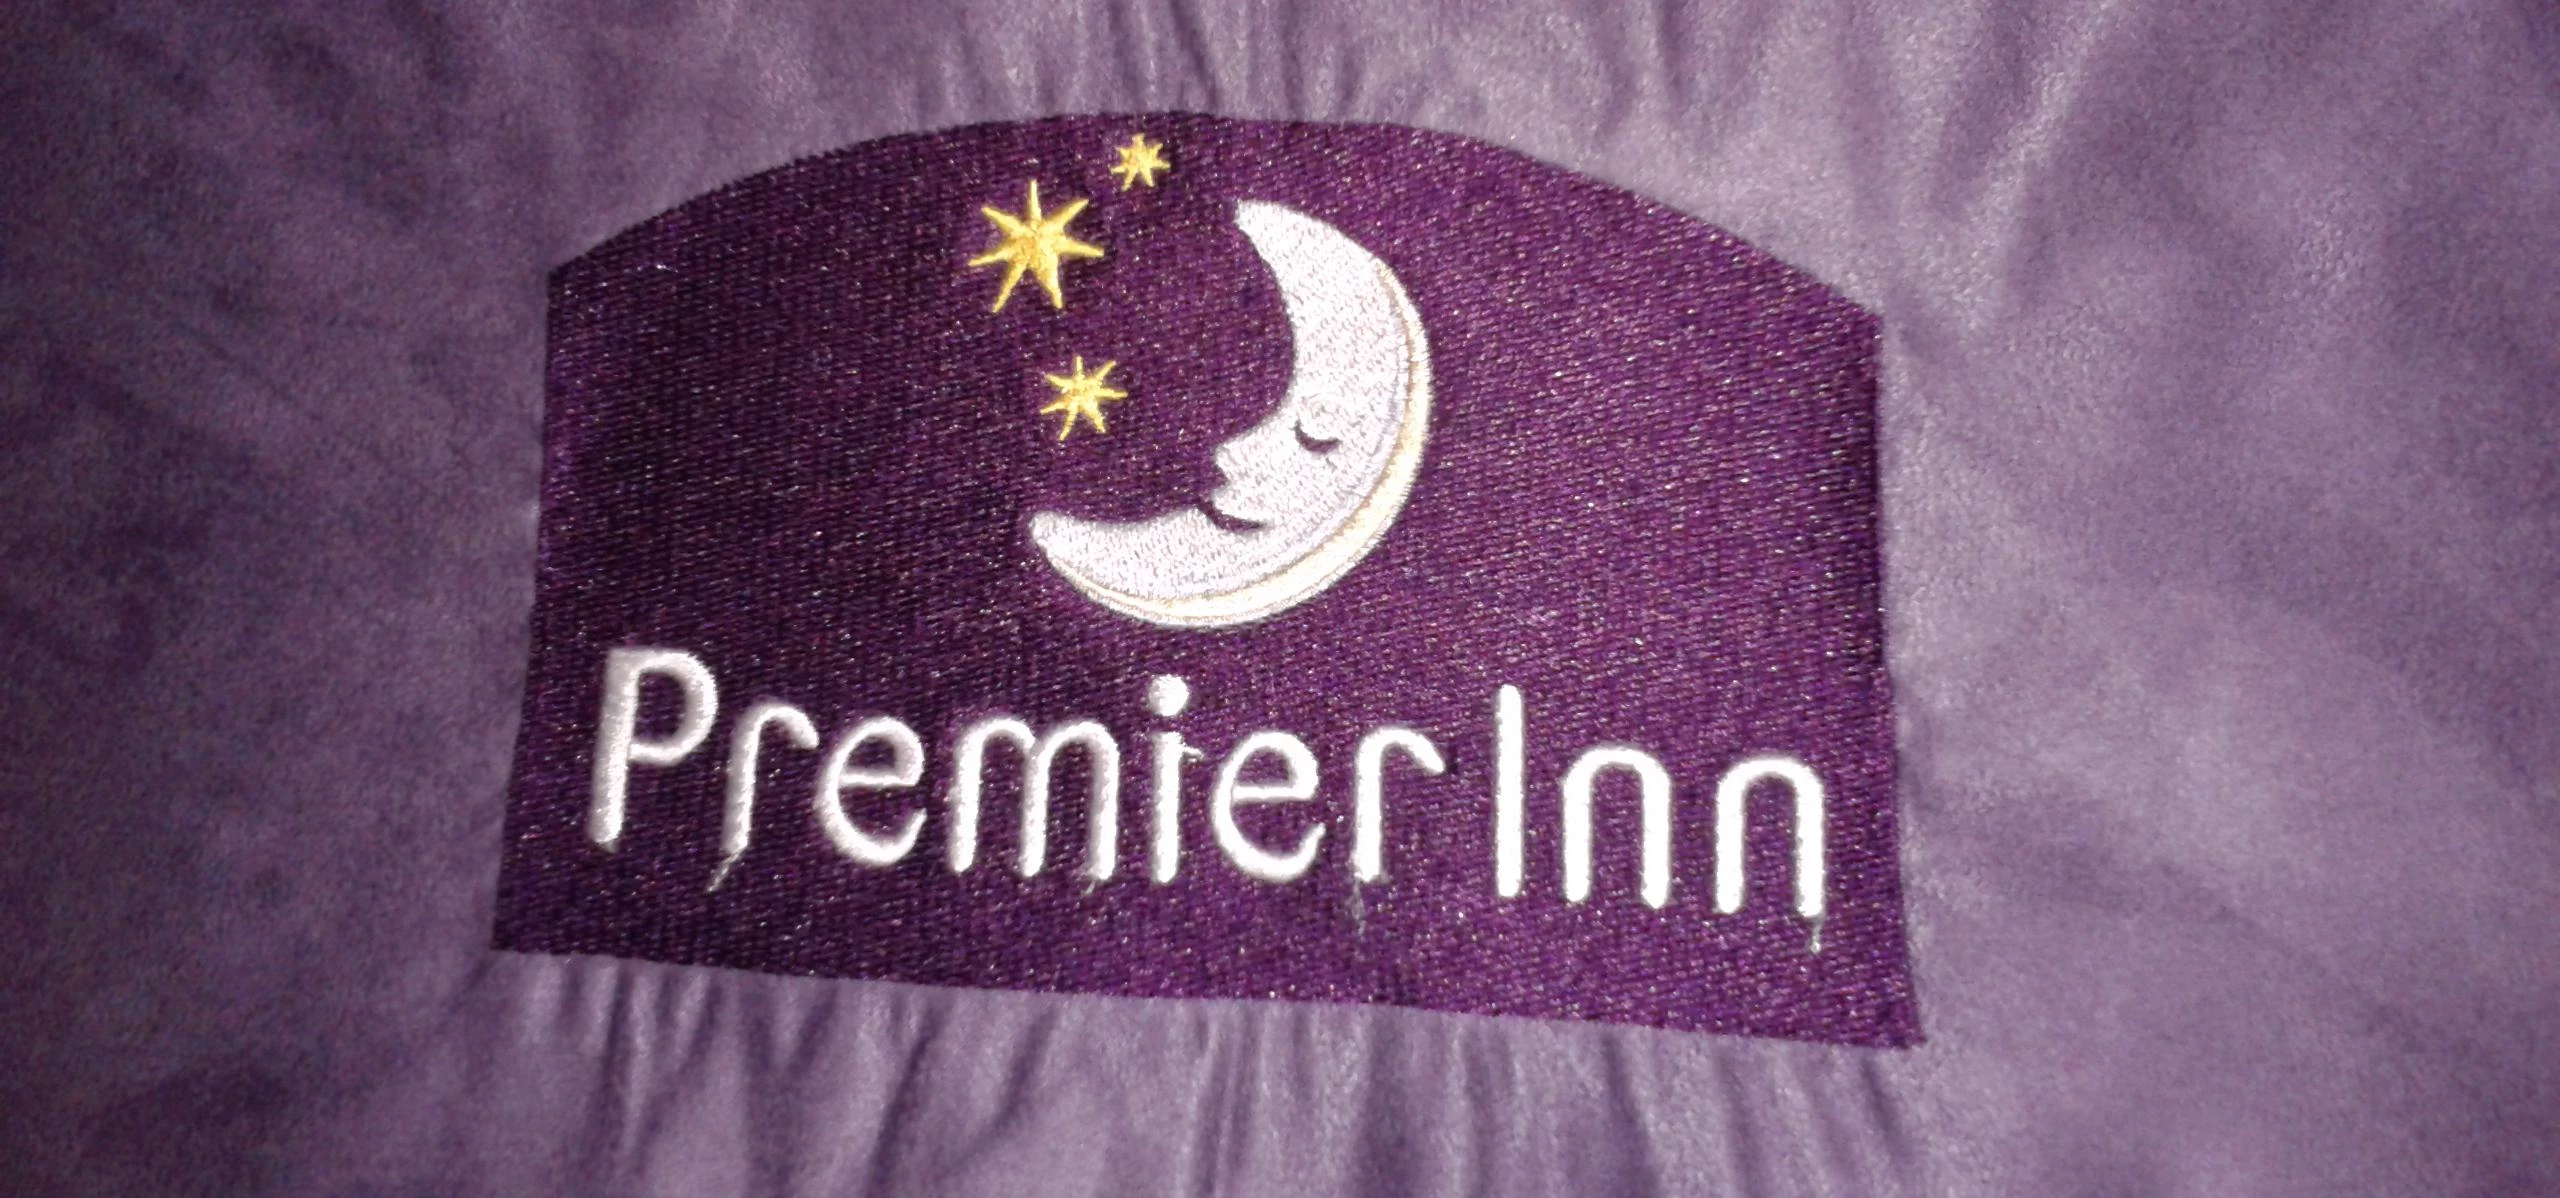 Room 101 - Premier Inn Albert Dock - Liverpool - sign